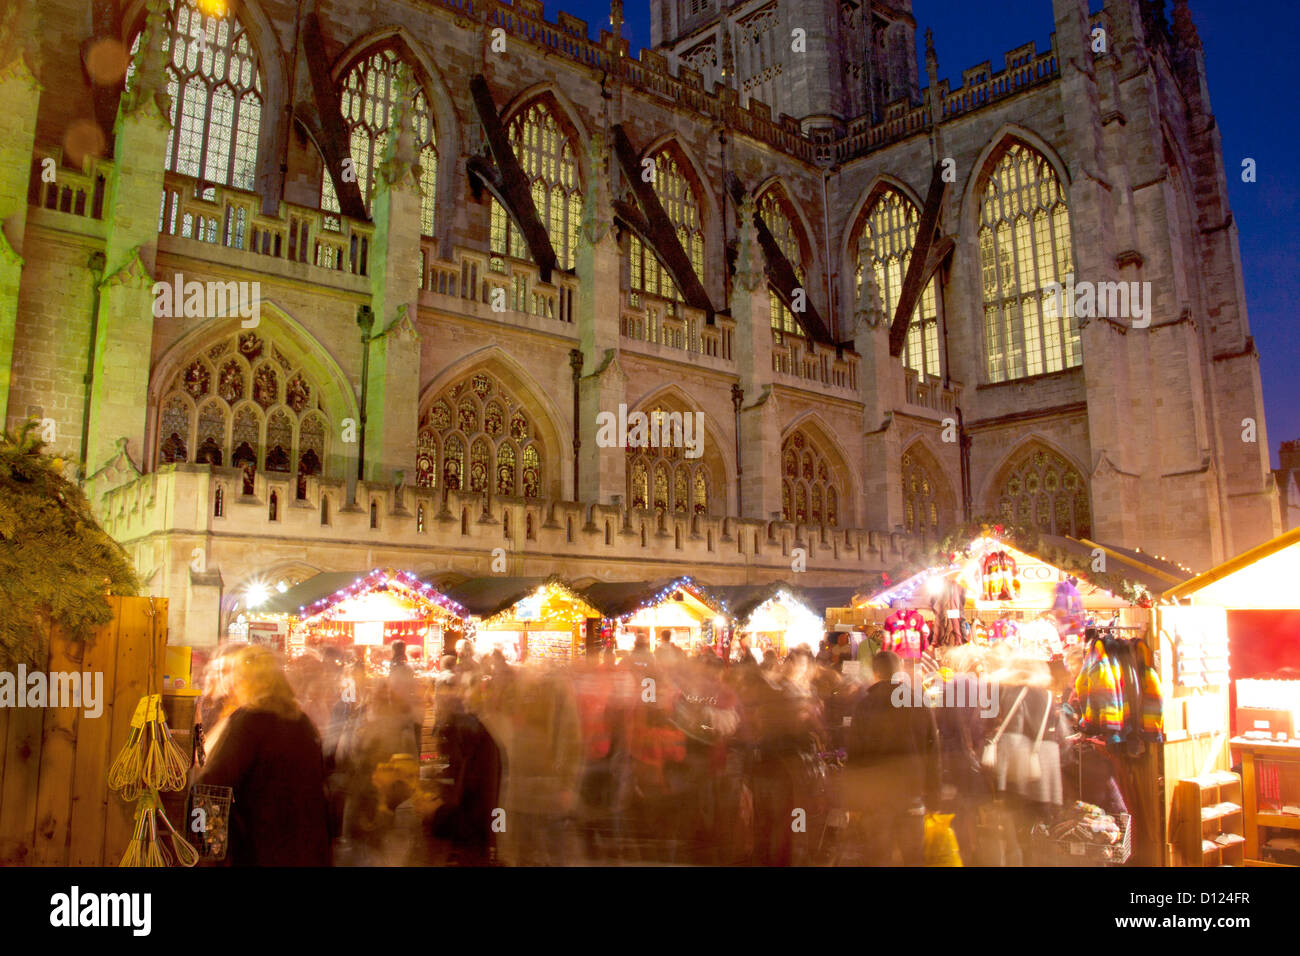 Les étals du marché de Noël avec l'abbaye de Bath en arrière-plan la nuit / crépuscule / Crépuscule Baignoire Somerset England UK Banque D'Images